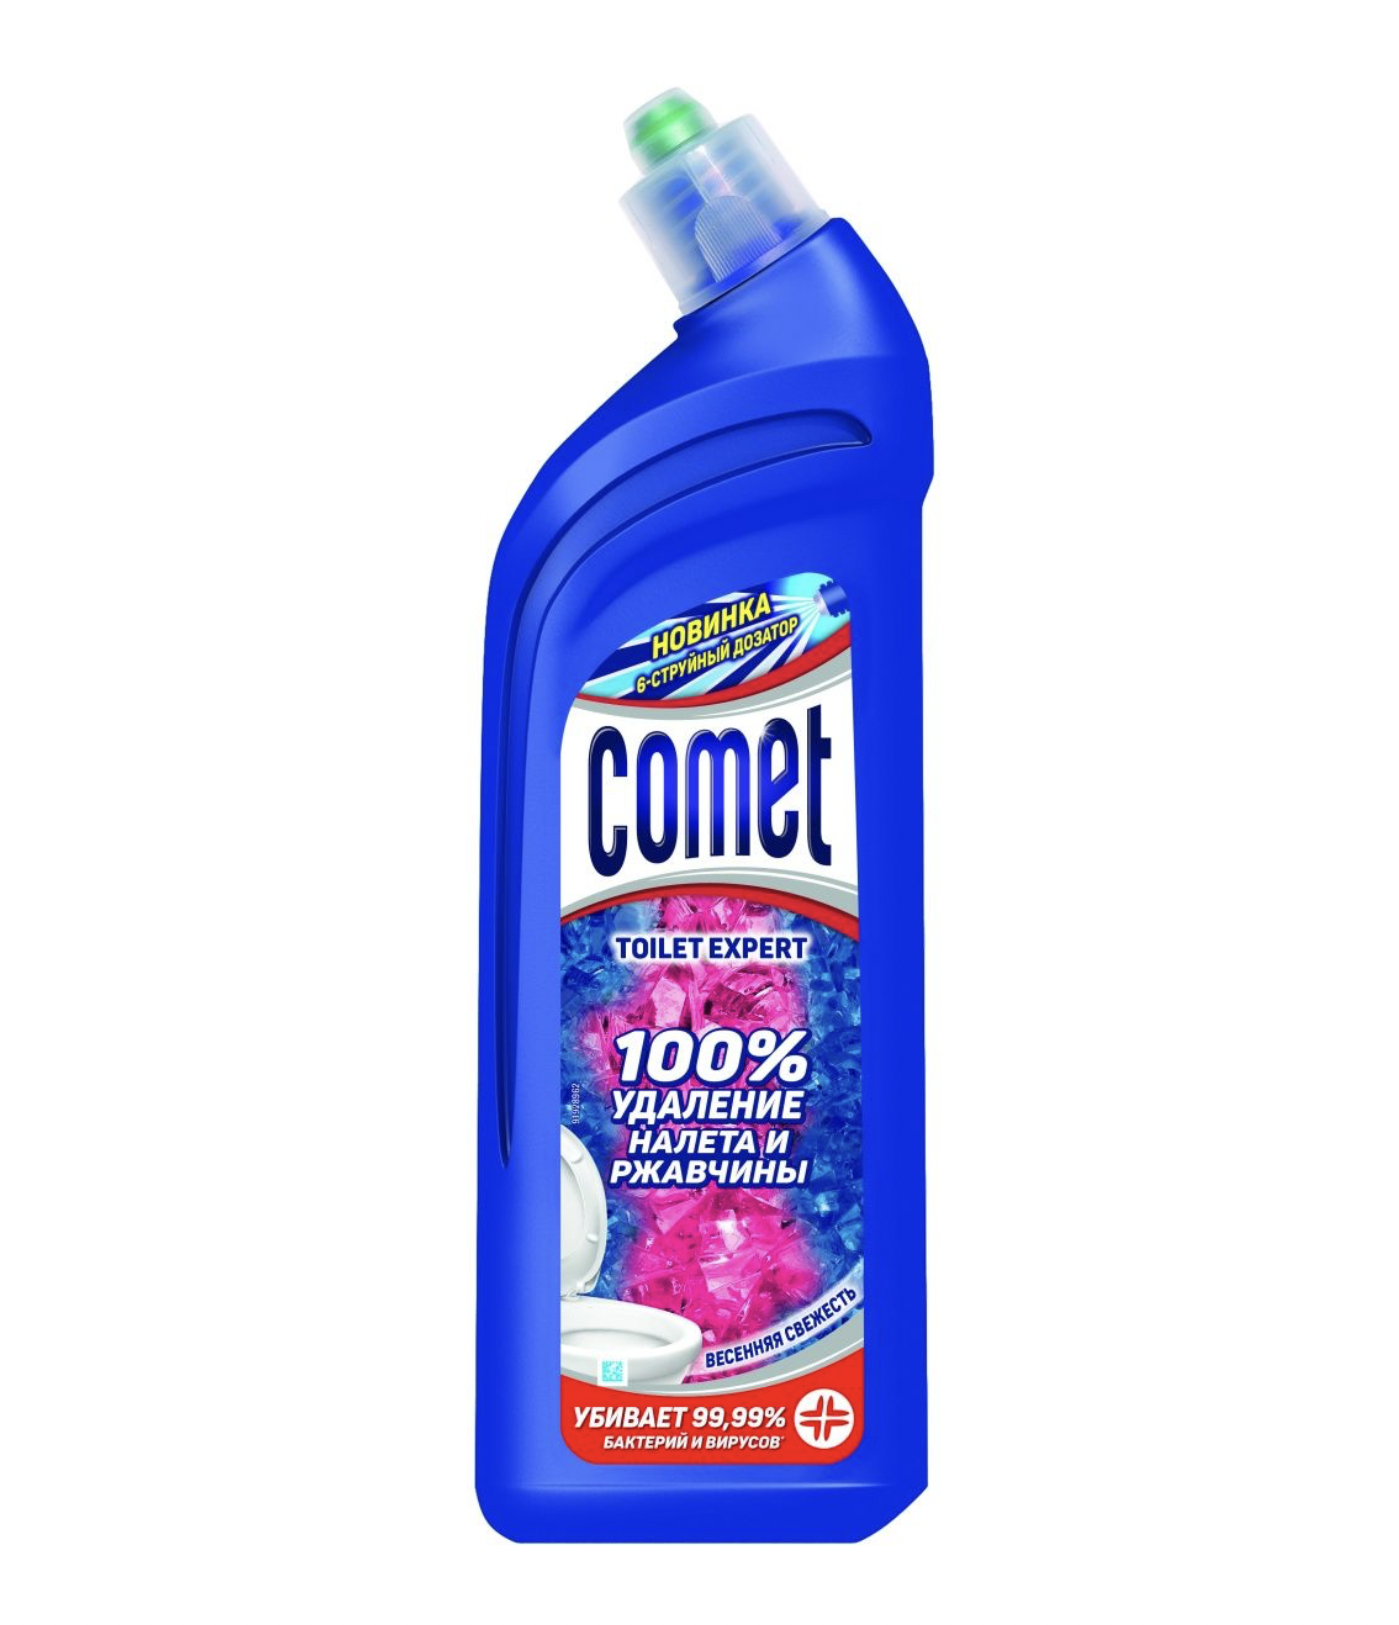     / Comet -         700 